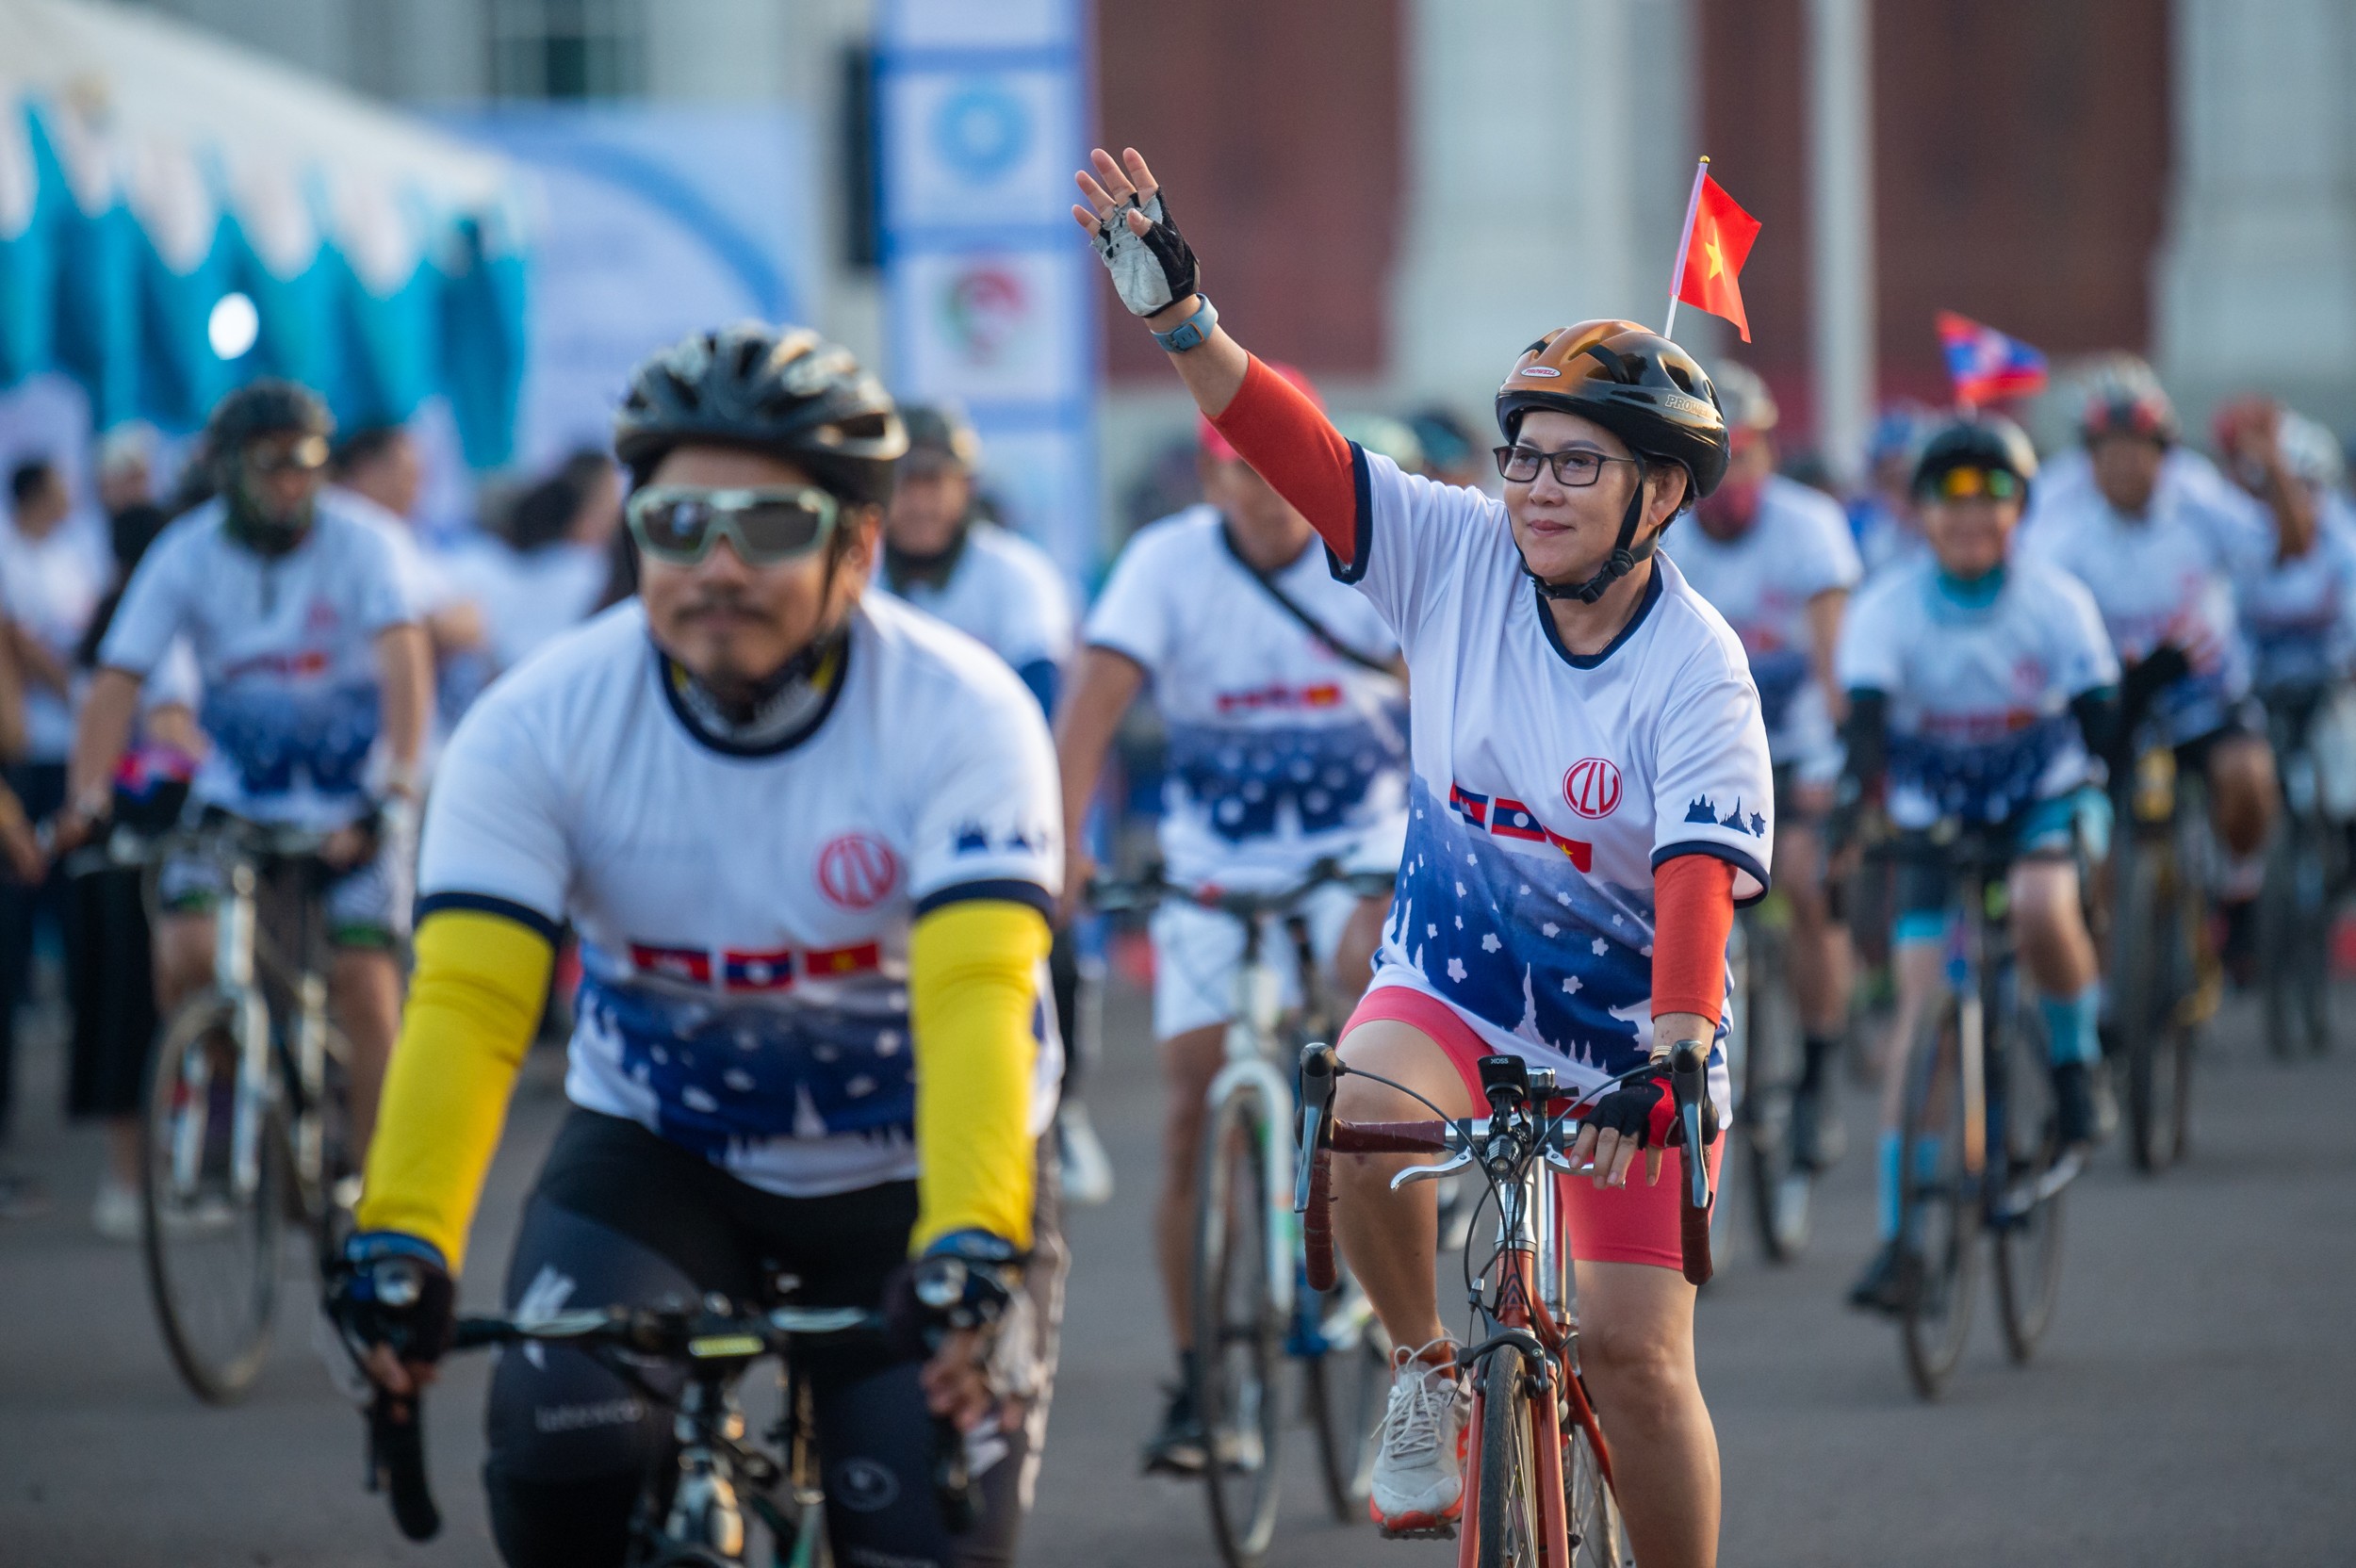 Giải đua xe đạp hữu nghị ba nước Campuchia-Lào-Việt Nam nằm trong khuôn khổ Hội nghị cấp cao Quốc hội ba nước Campuchia-Lào-Việt Nam (CLV) lần thứ nhất